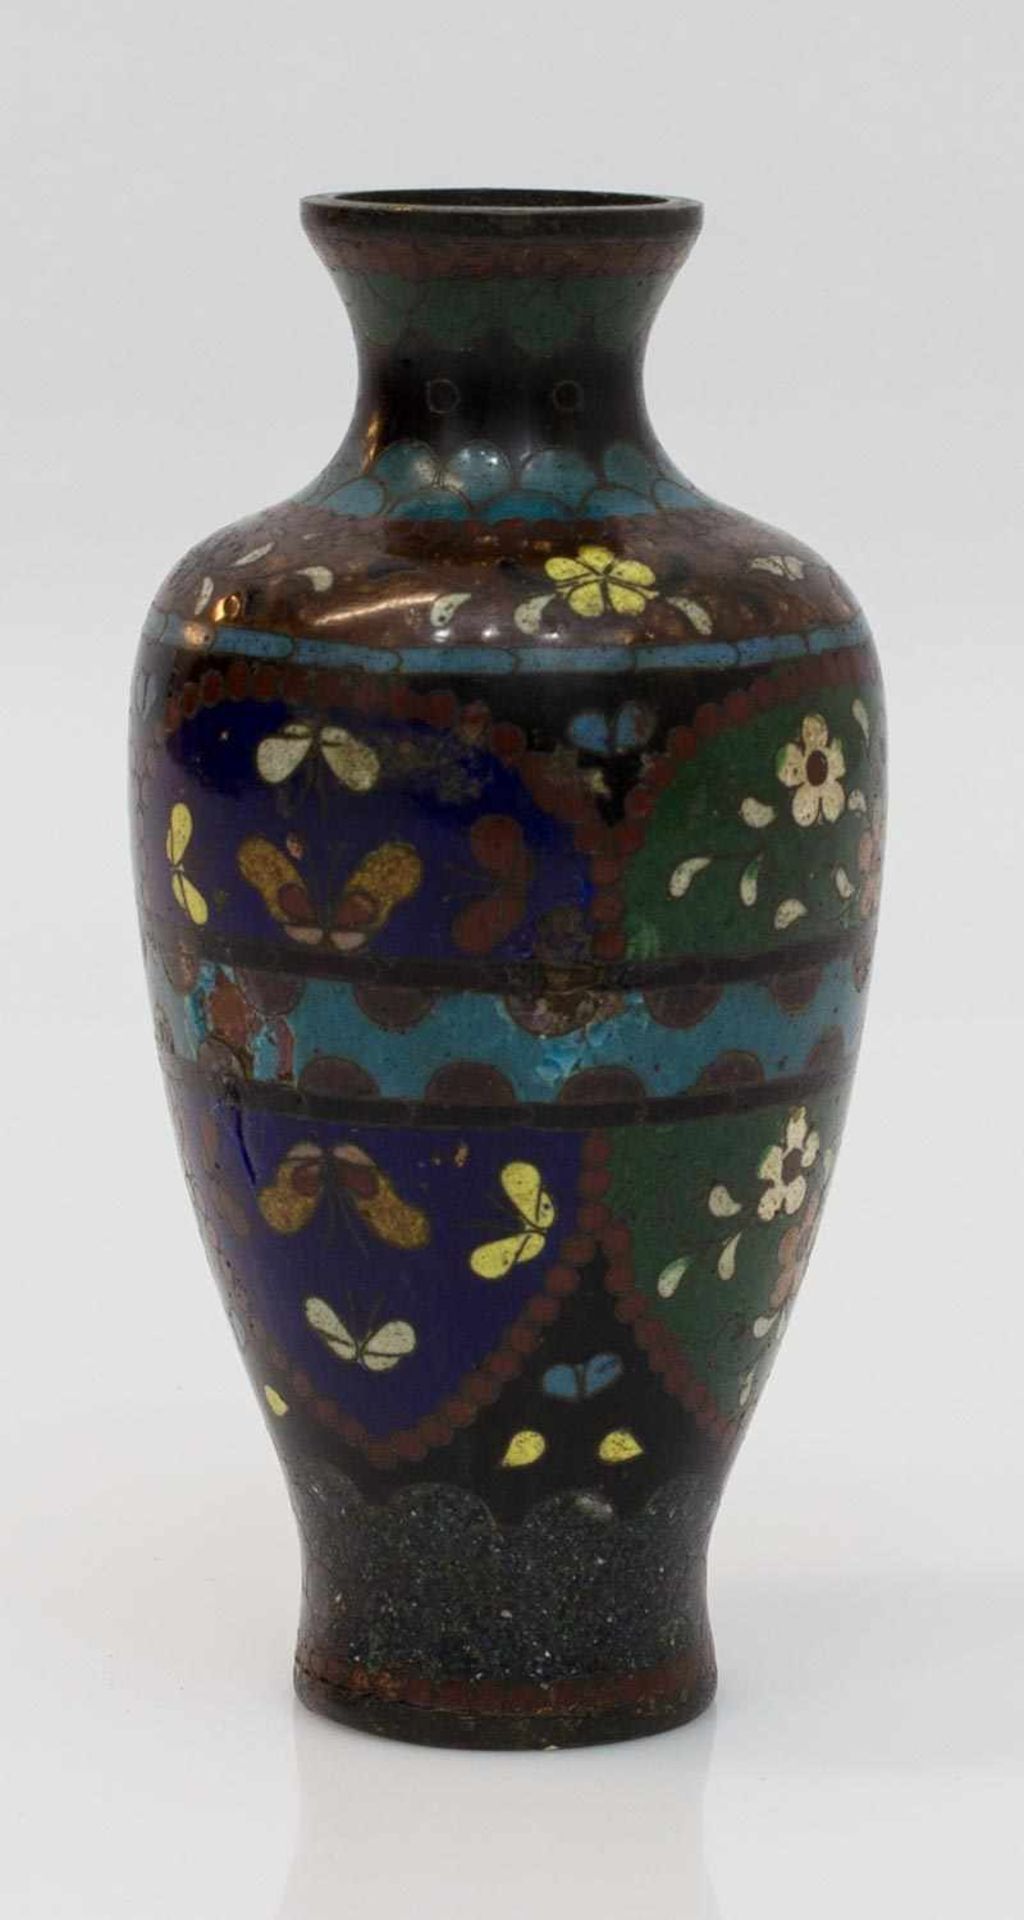 Antike Cloissonette Vase Asien 19. Jh., Blumen- u. Insektendekor auf Kupfer, diverse Beschädigungen,